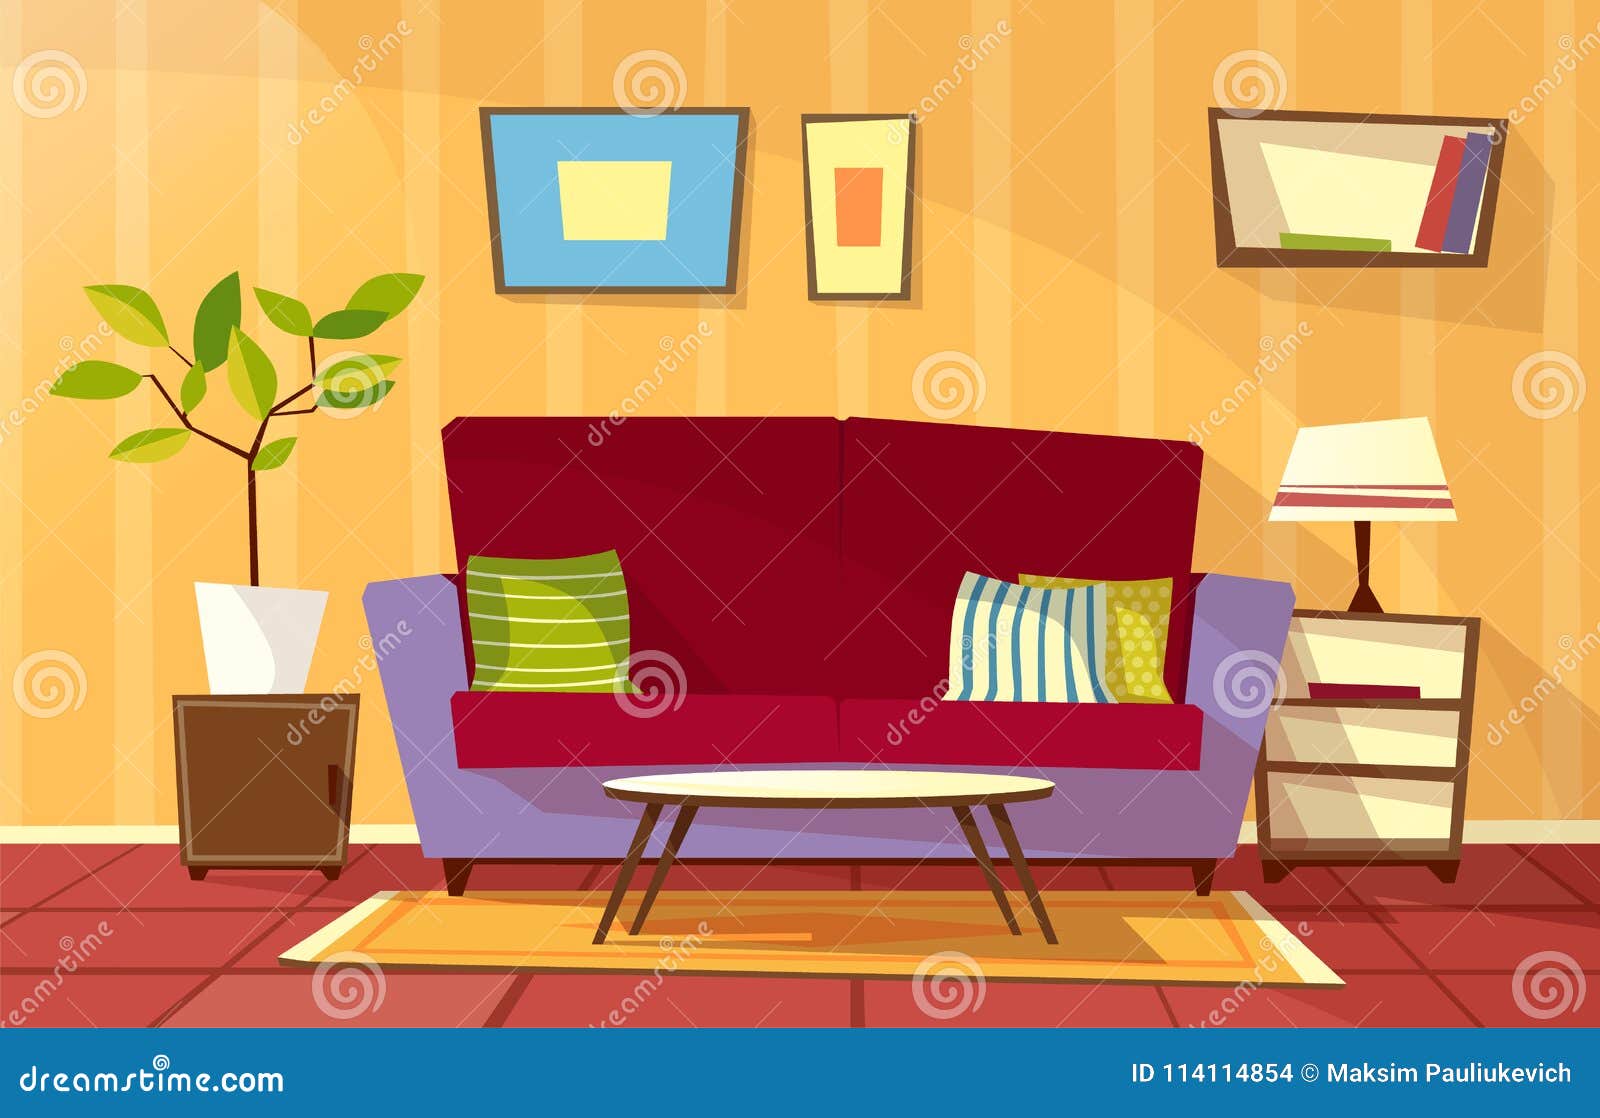 Vector Color Interior Cartoon Living Room Stock Illustrations – 3,713  Vector Color Interior Cartoon Living Room Stock Illustrations, Vectors &  Clipart - Dreamstime